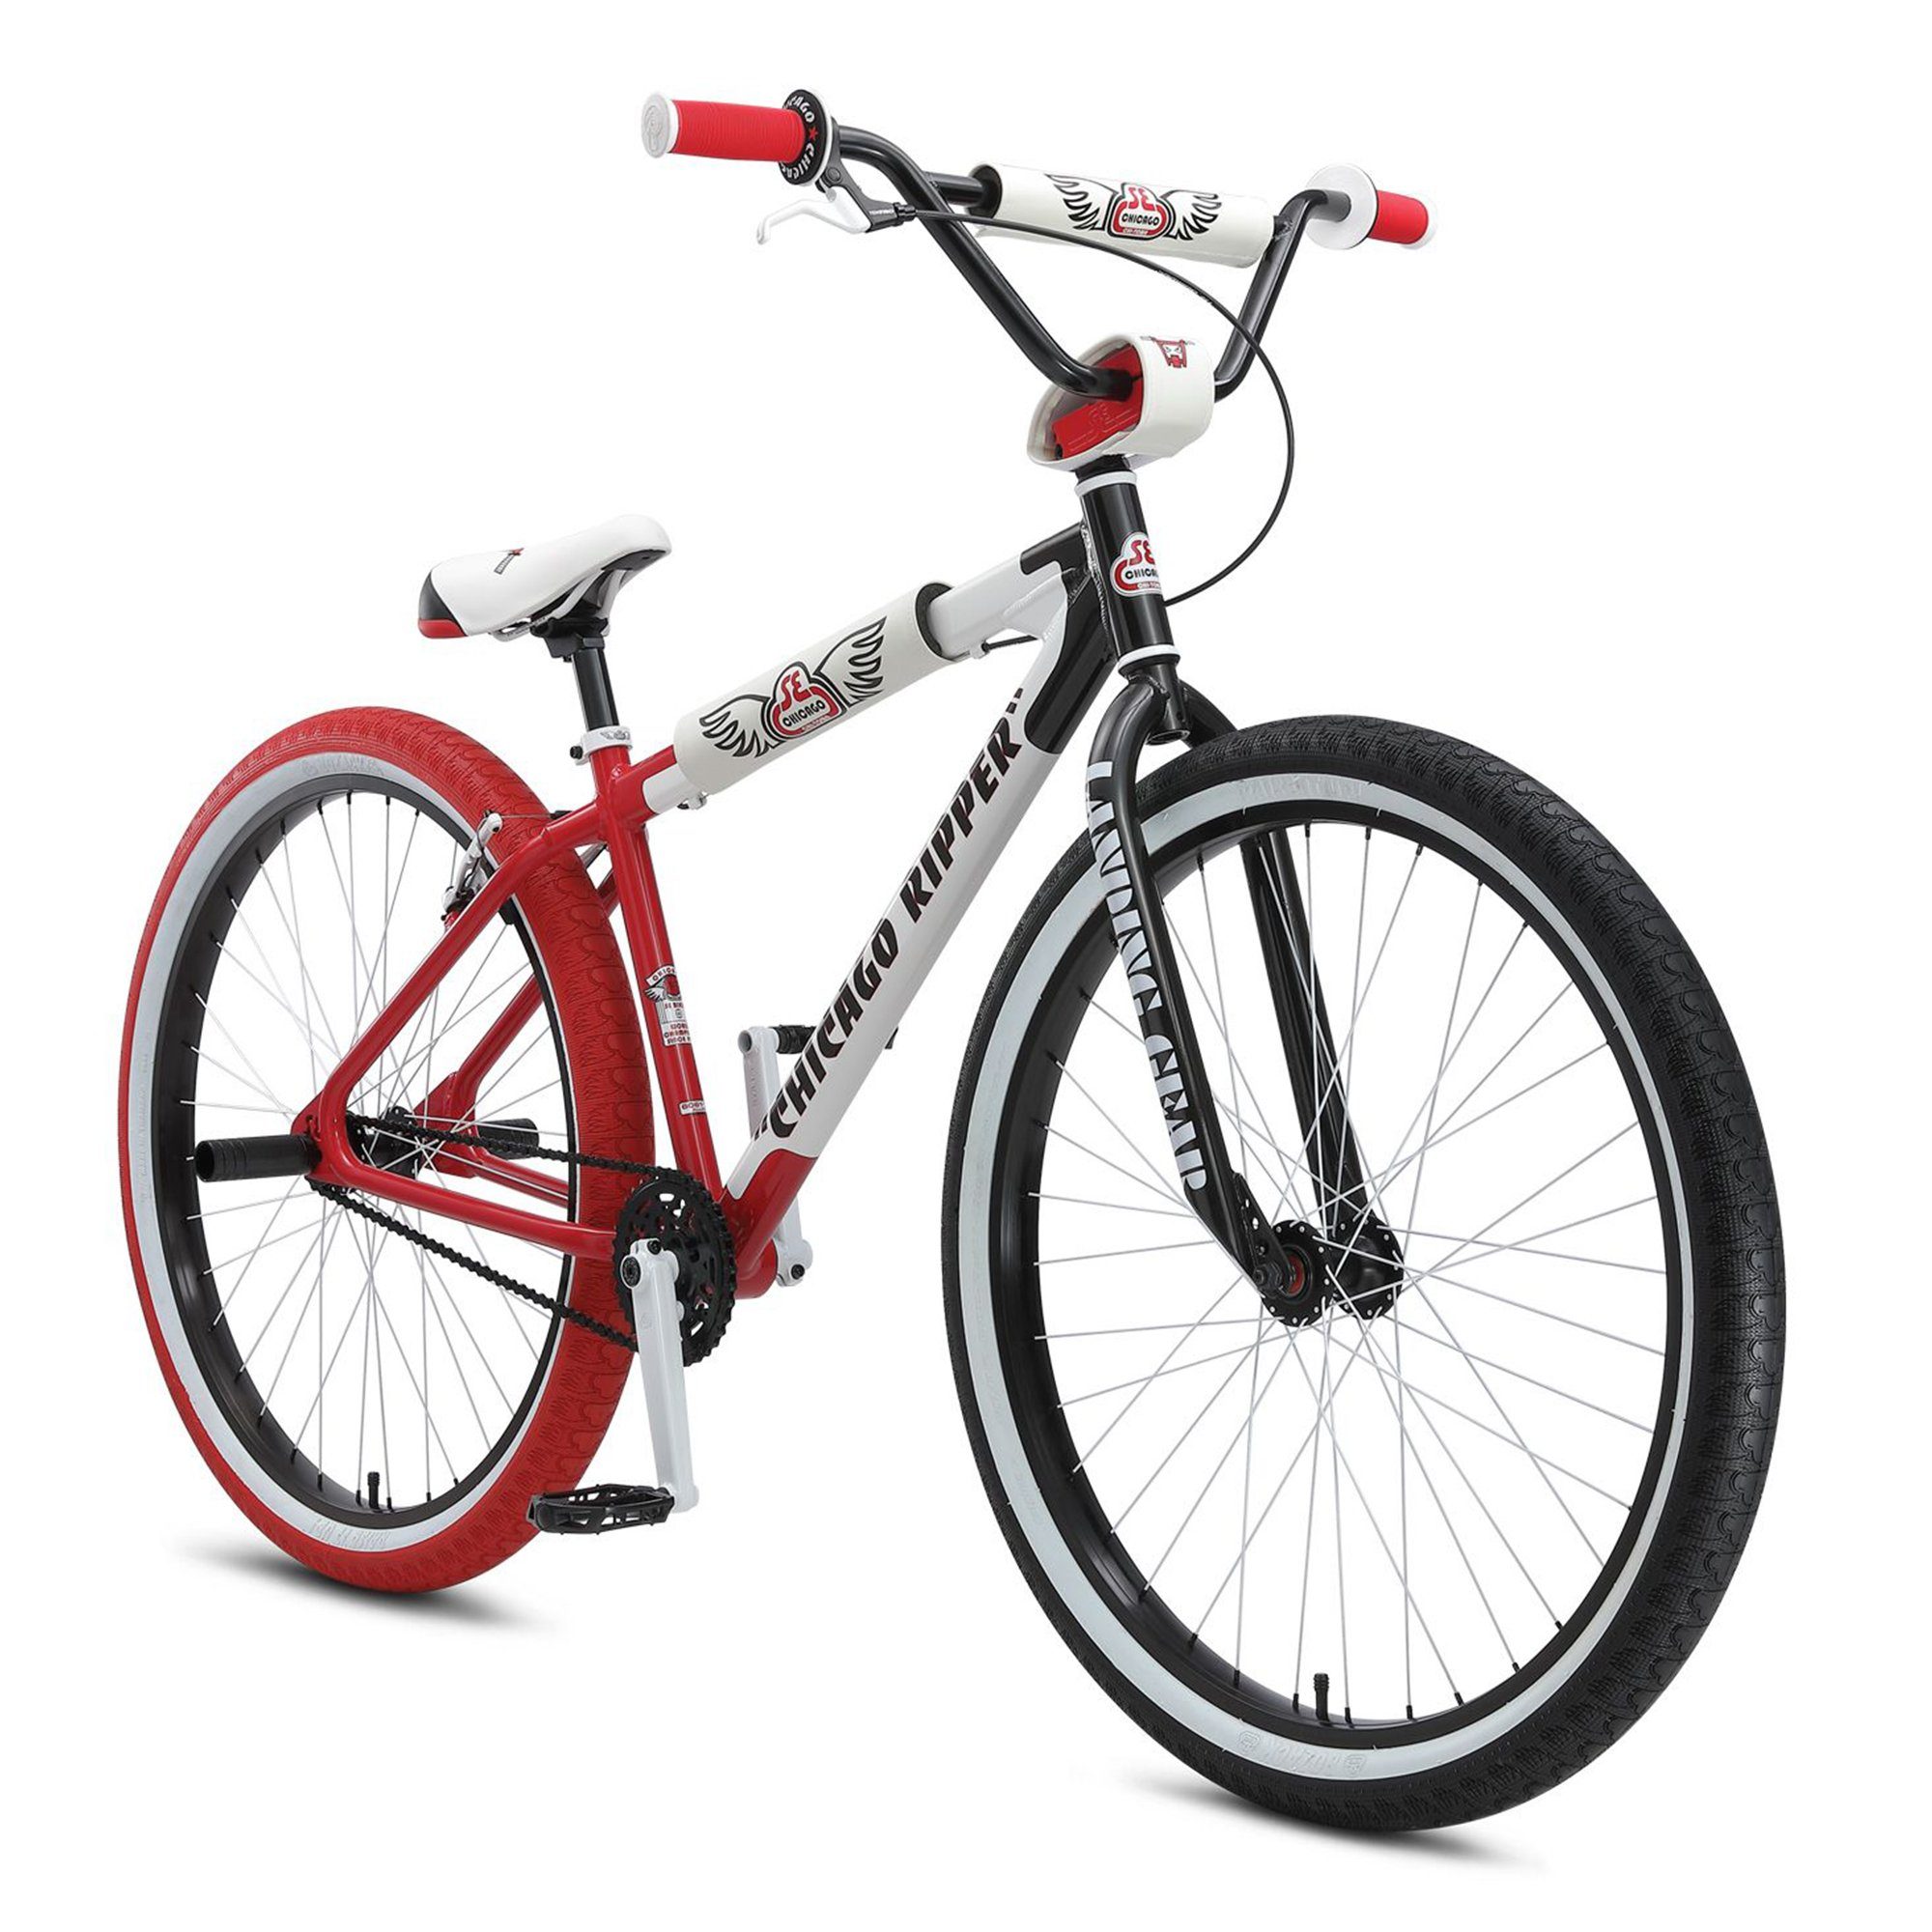 SE Bikes 2021, Chicago Jugendliche 1 Ripper Wheelie Schaltung, Rad Stuntbike ohne Zoll BMX Bike Big BMX-Rad Fahrrad Gang, Erwachsene 29